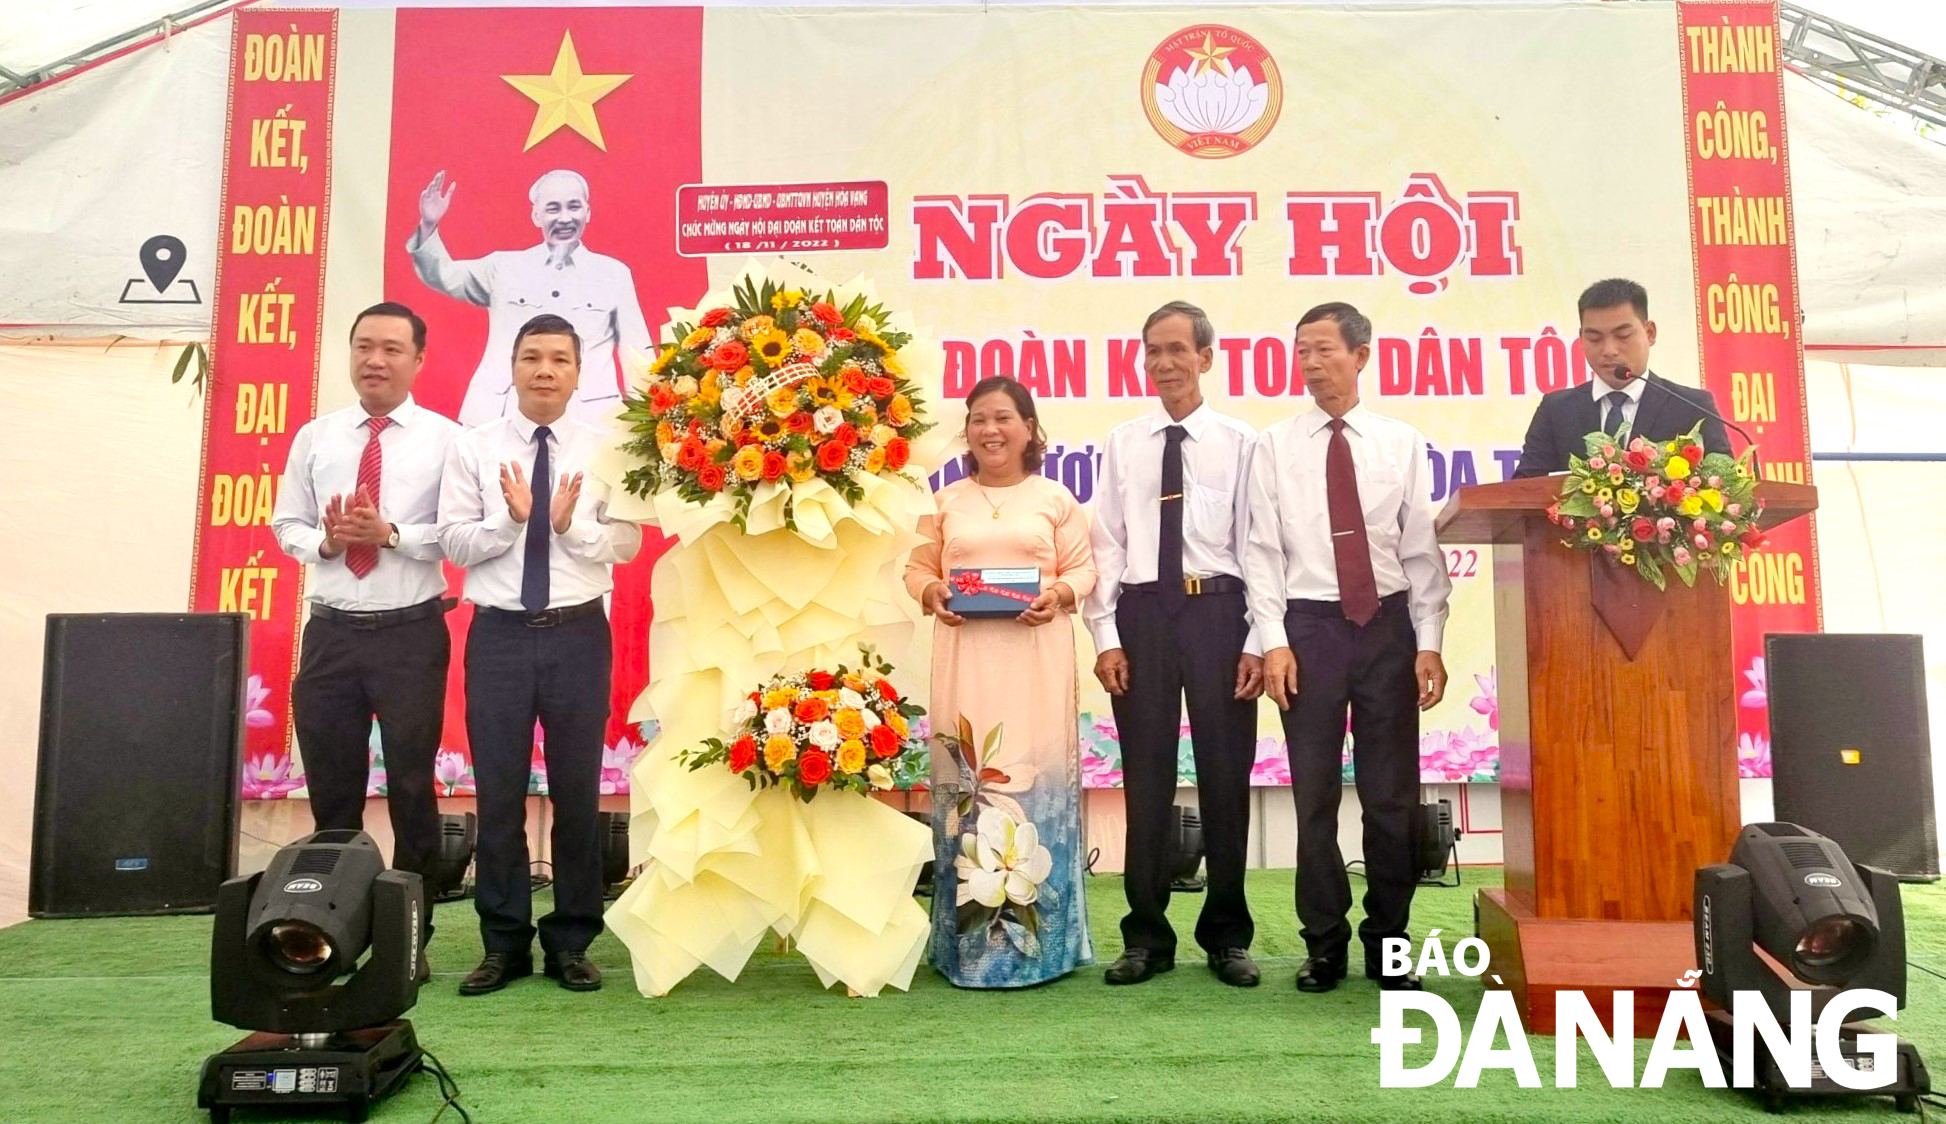 Bà Lê Thị Châu (giữa) nhận hoa chúc mừng ngày hội Đại đoàn kết toàn dân tộc do lãnh đạo huyện Hòa Vang tặng. Ảnh: T.P